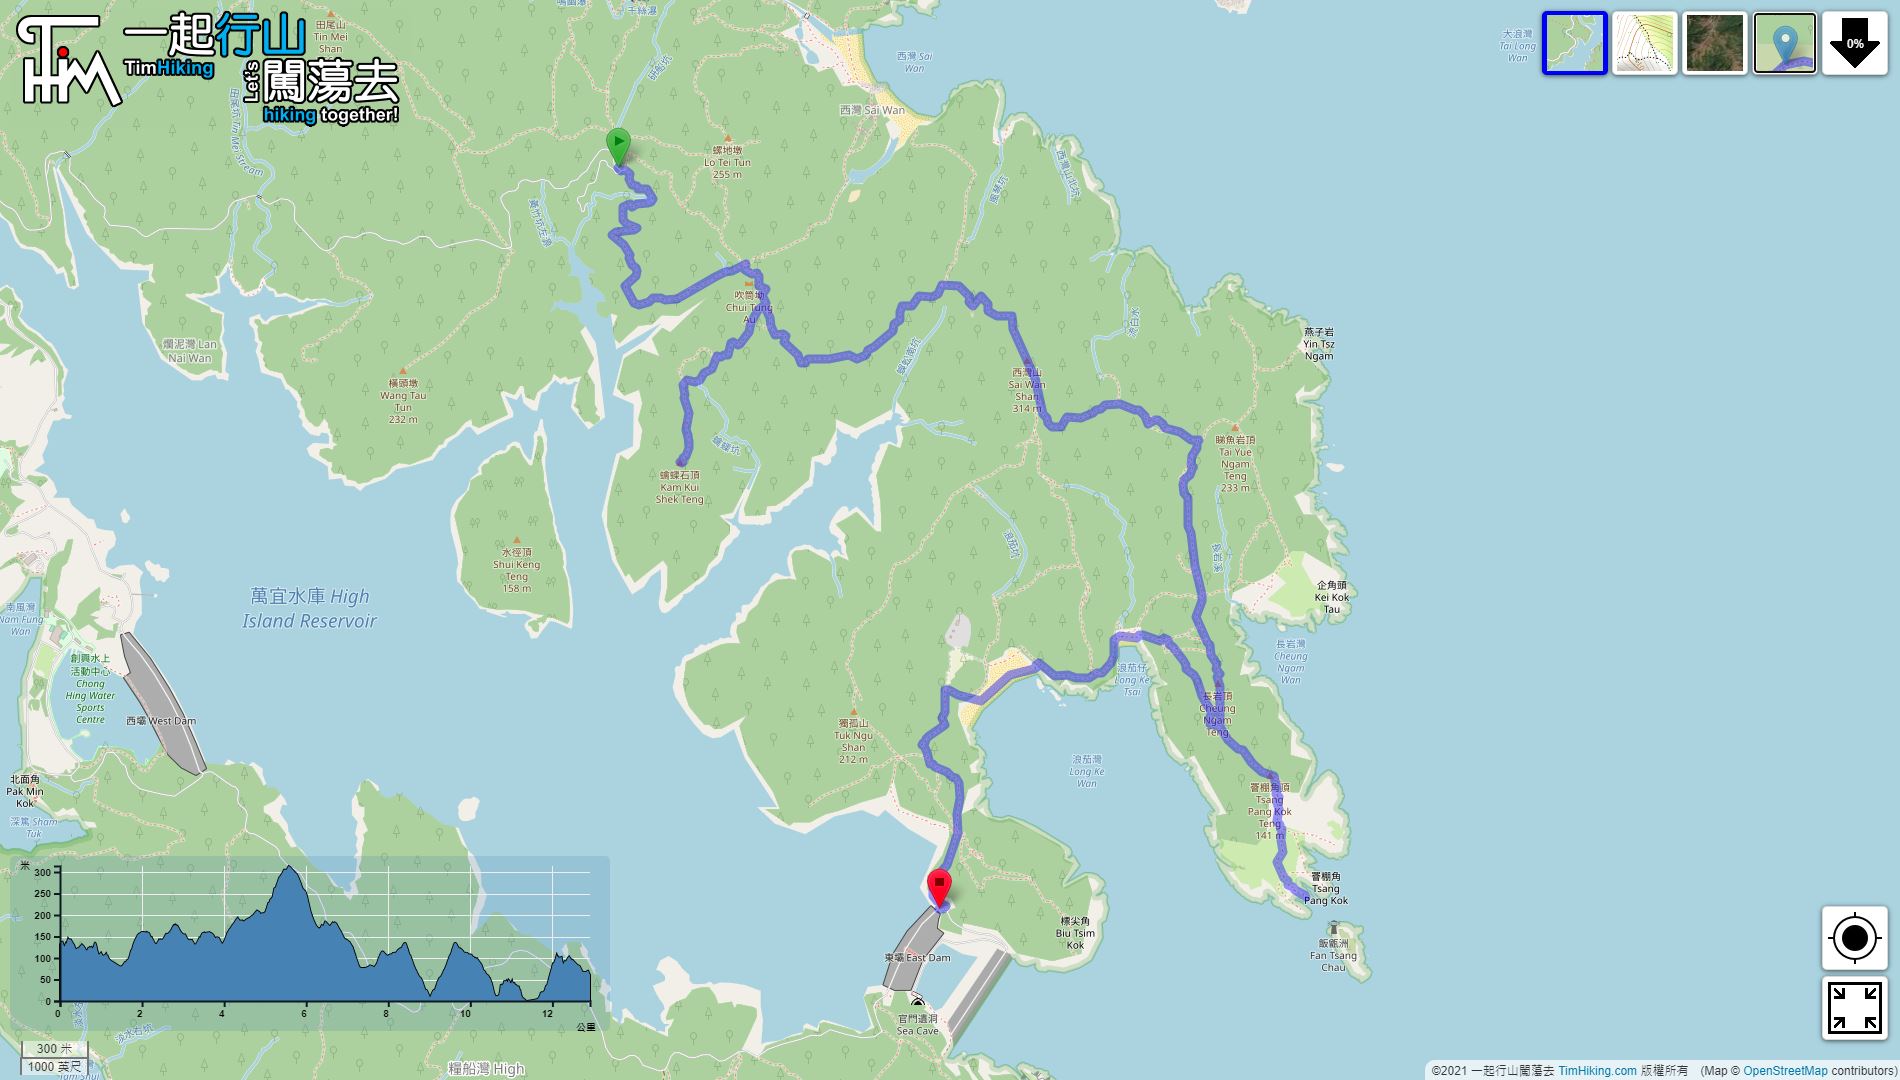 「Kam Kui Shek Teng, Tsang Pang Kok Teng」路線Map